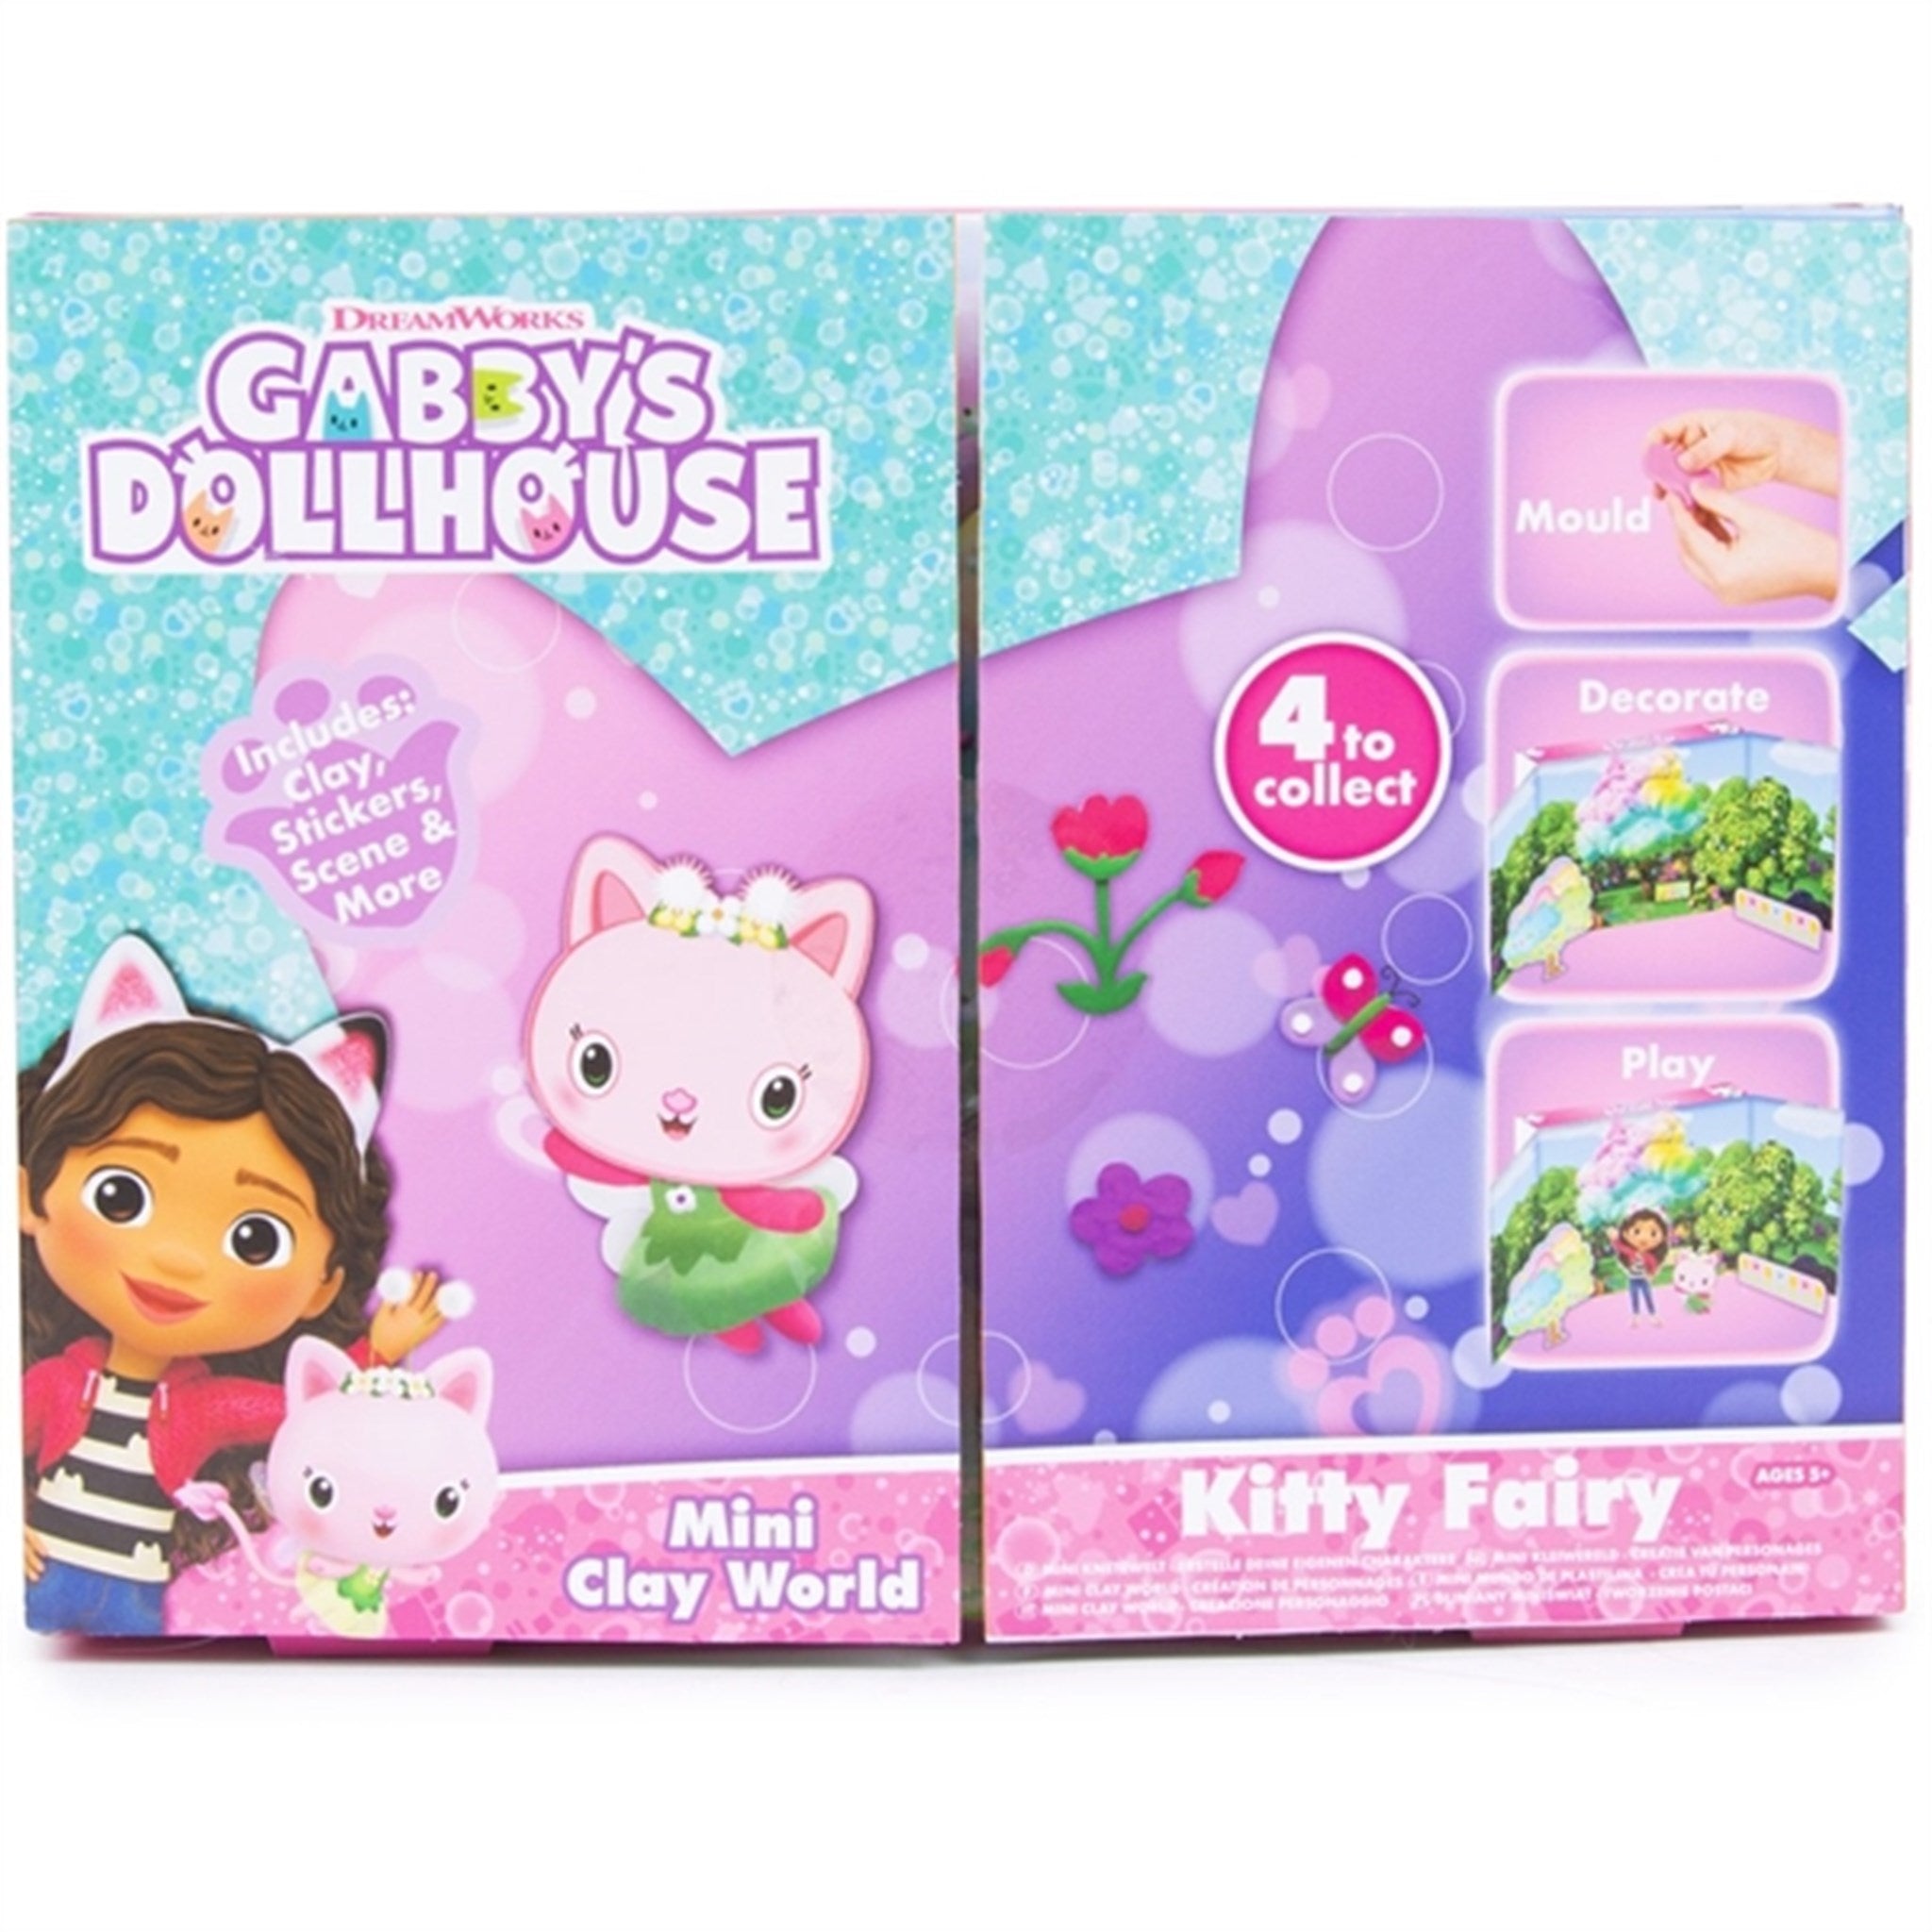 Gabby's Dollhouse Clay Kit - Kitty Fairy